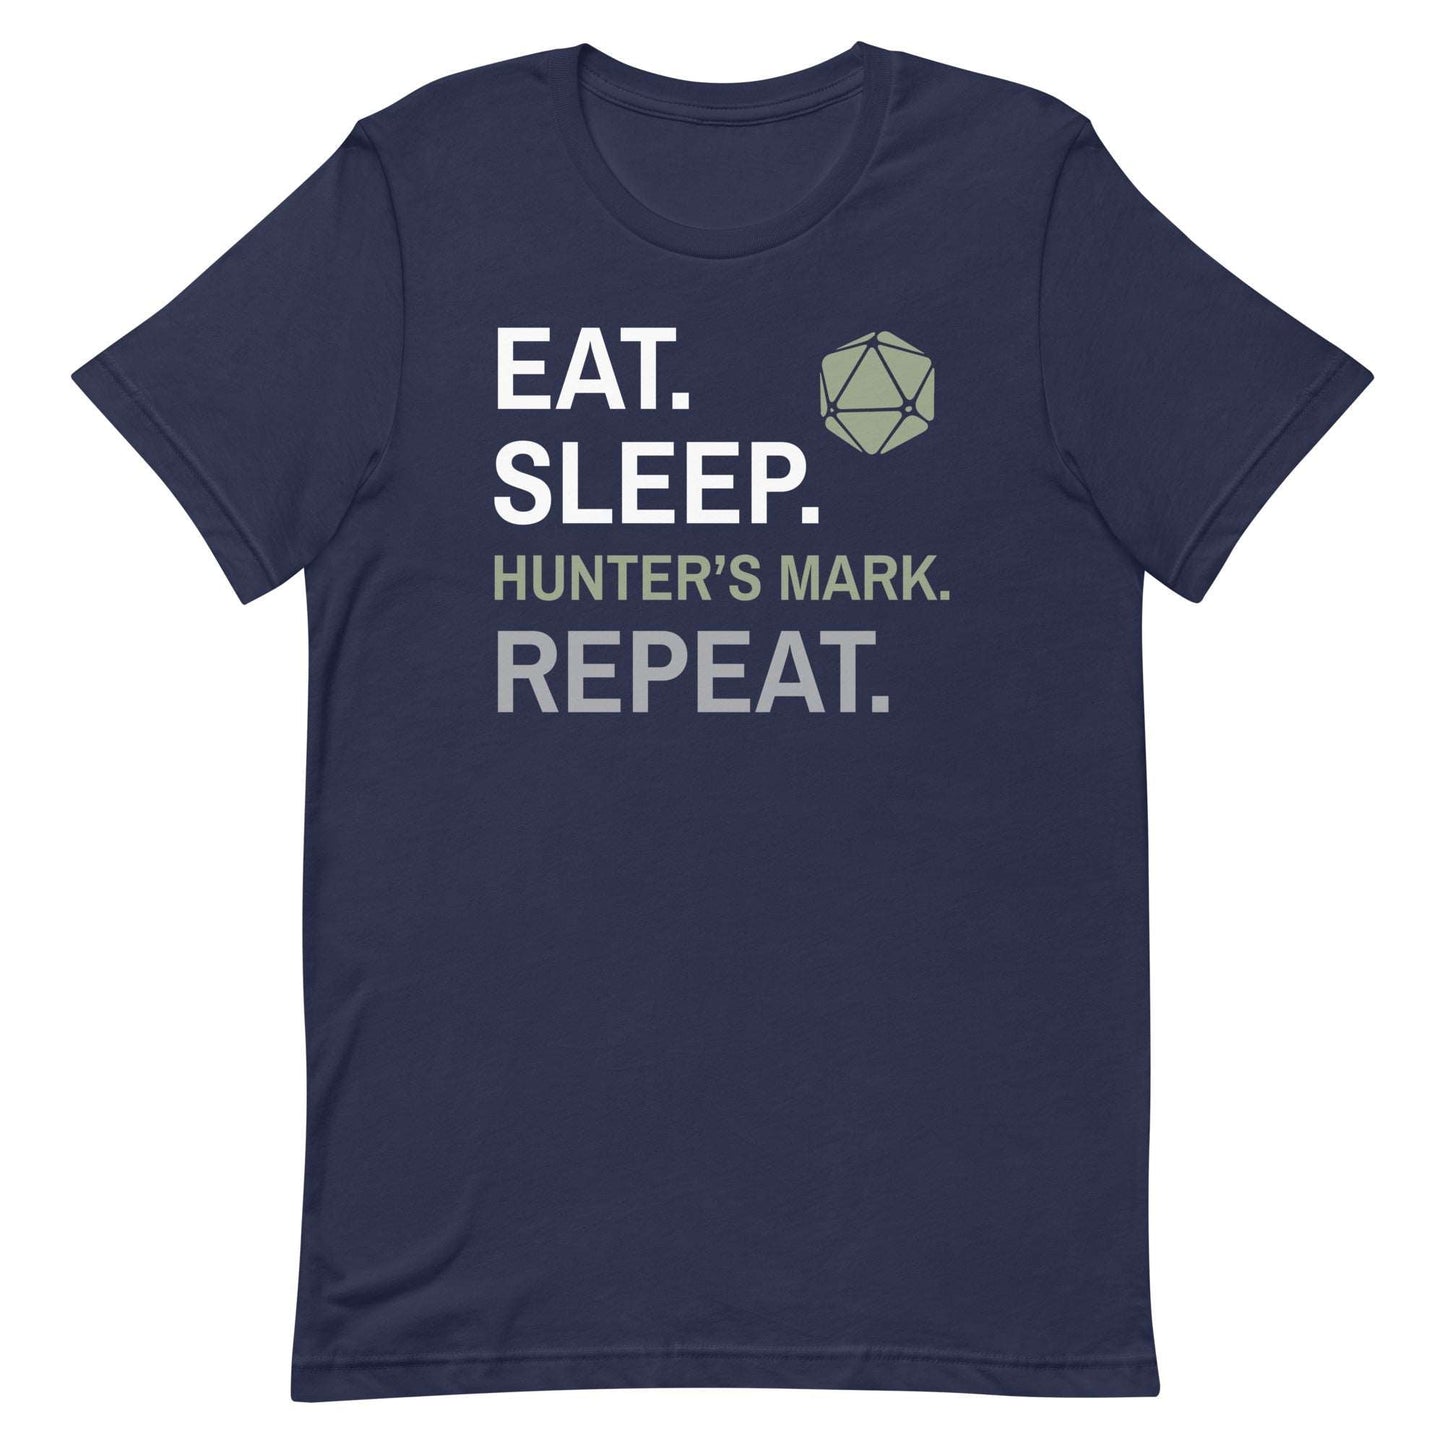 Ranger Class T-Shirt – 'Eat, Sleep, Hunter's Mark, Repeat' – Dungeons & Dragons Ranger Apparel T-Shirt Navy / S